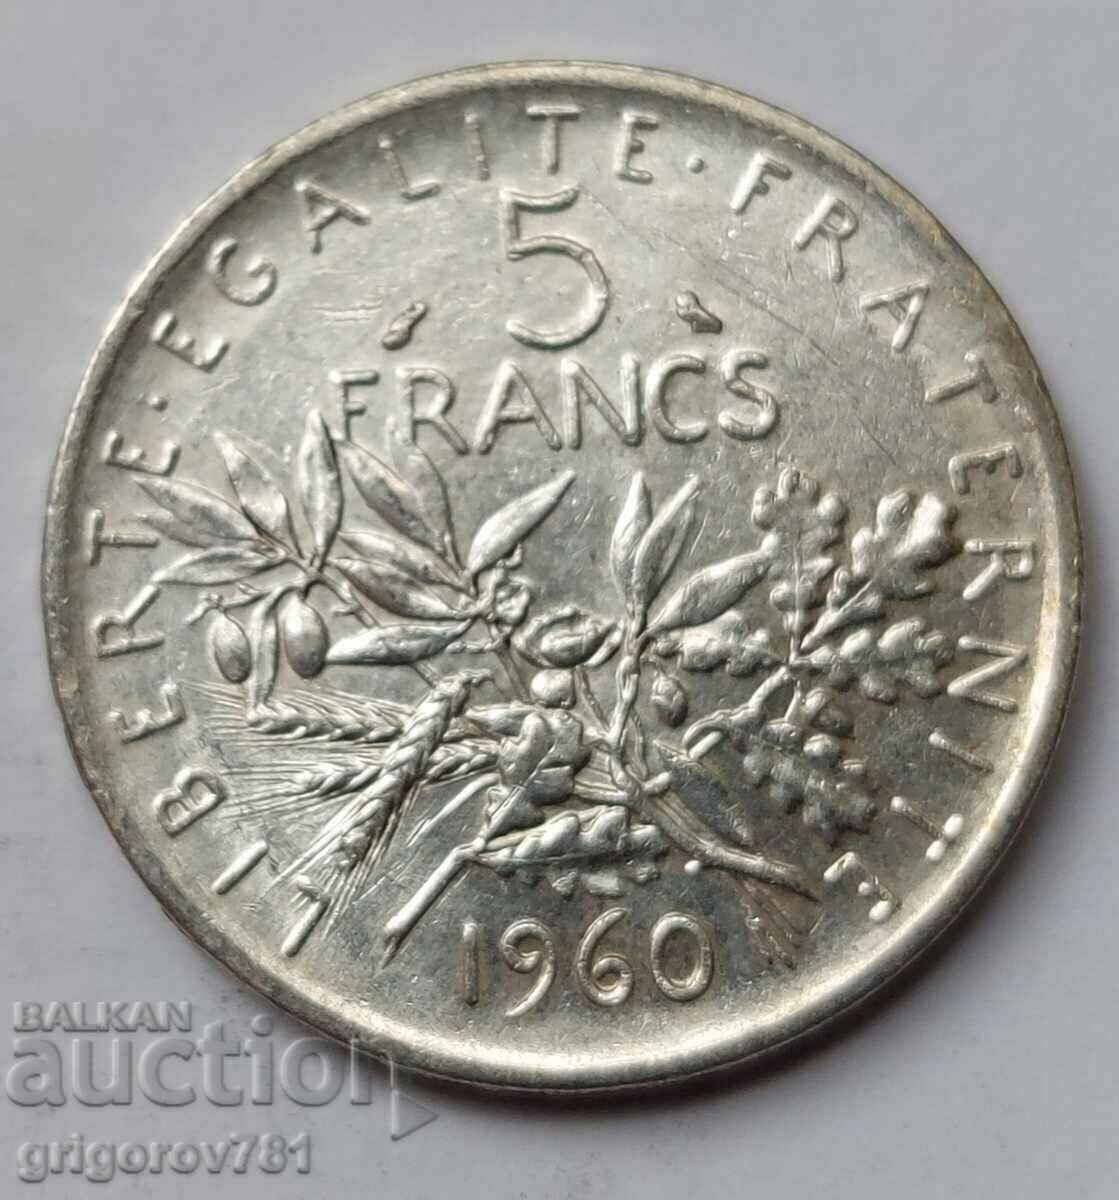 5 Franci Argint Franta 1960 - Moneda de argint #8